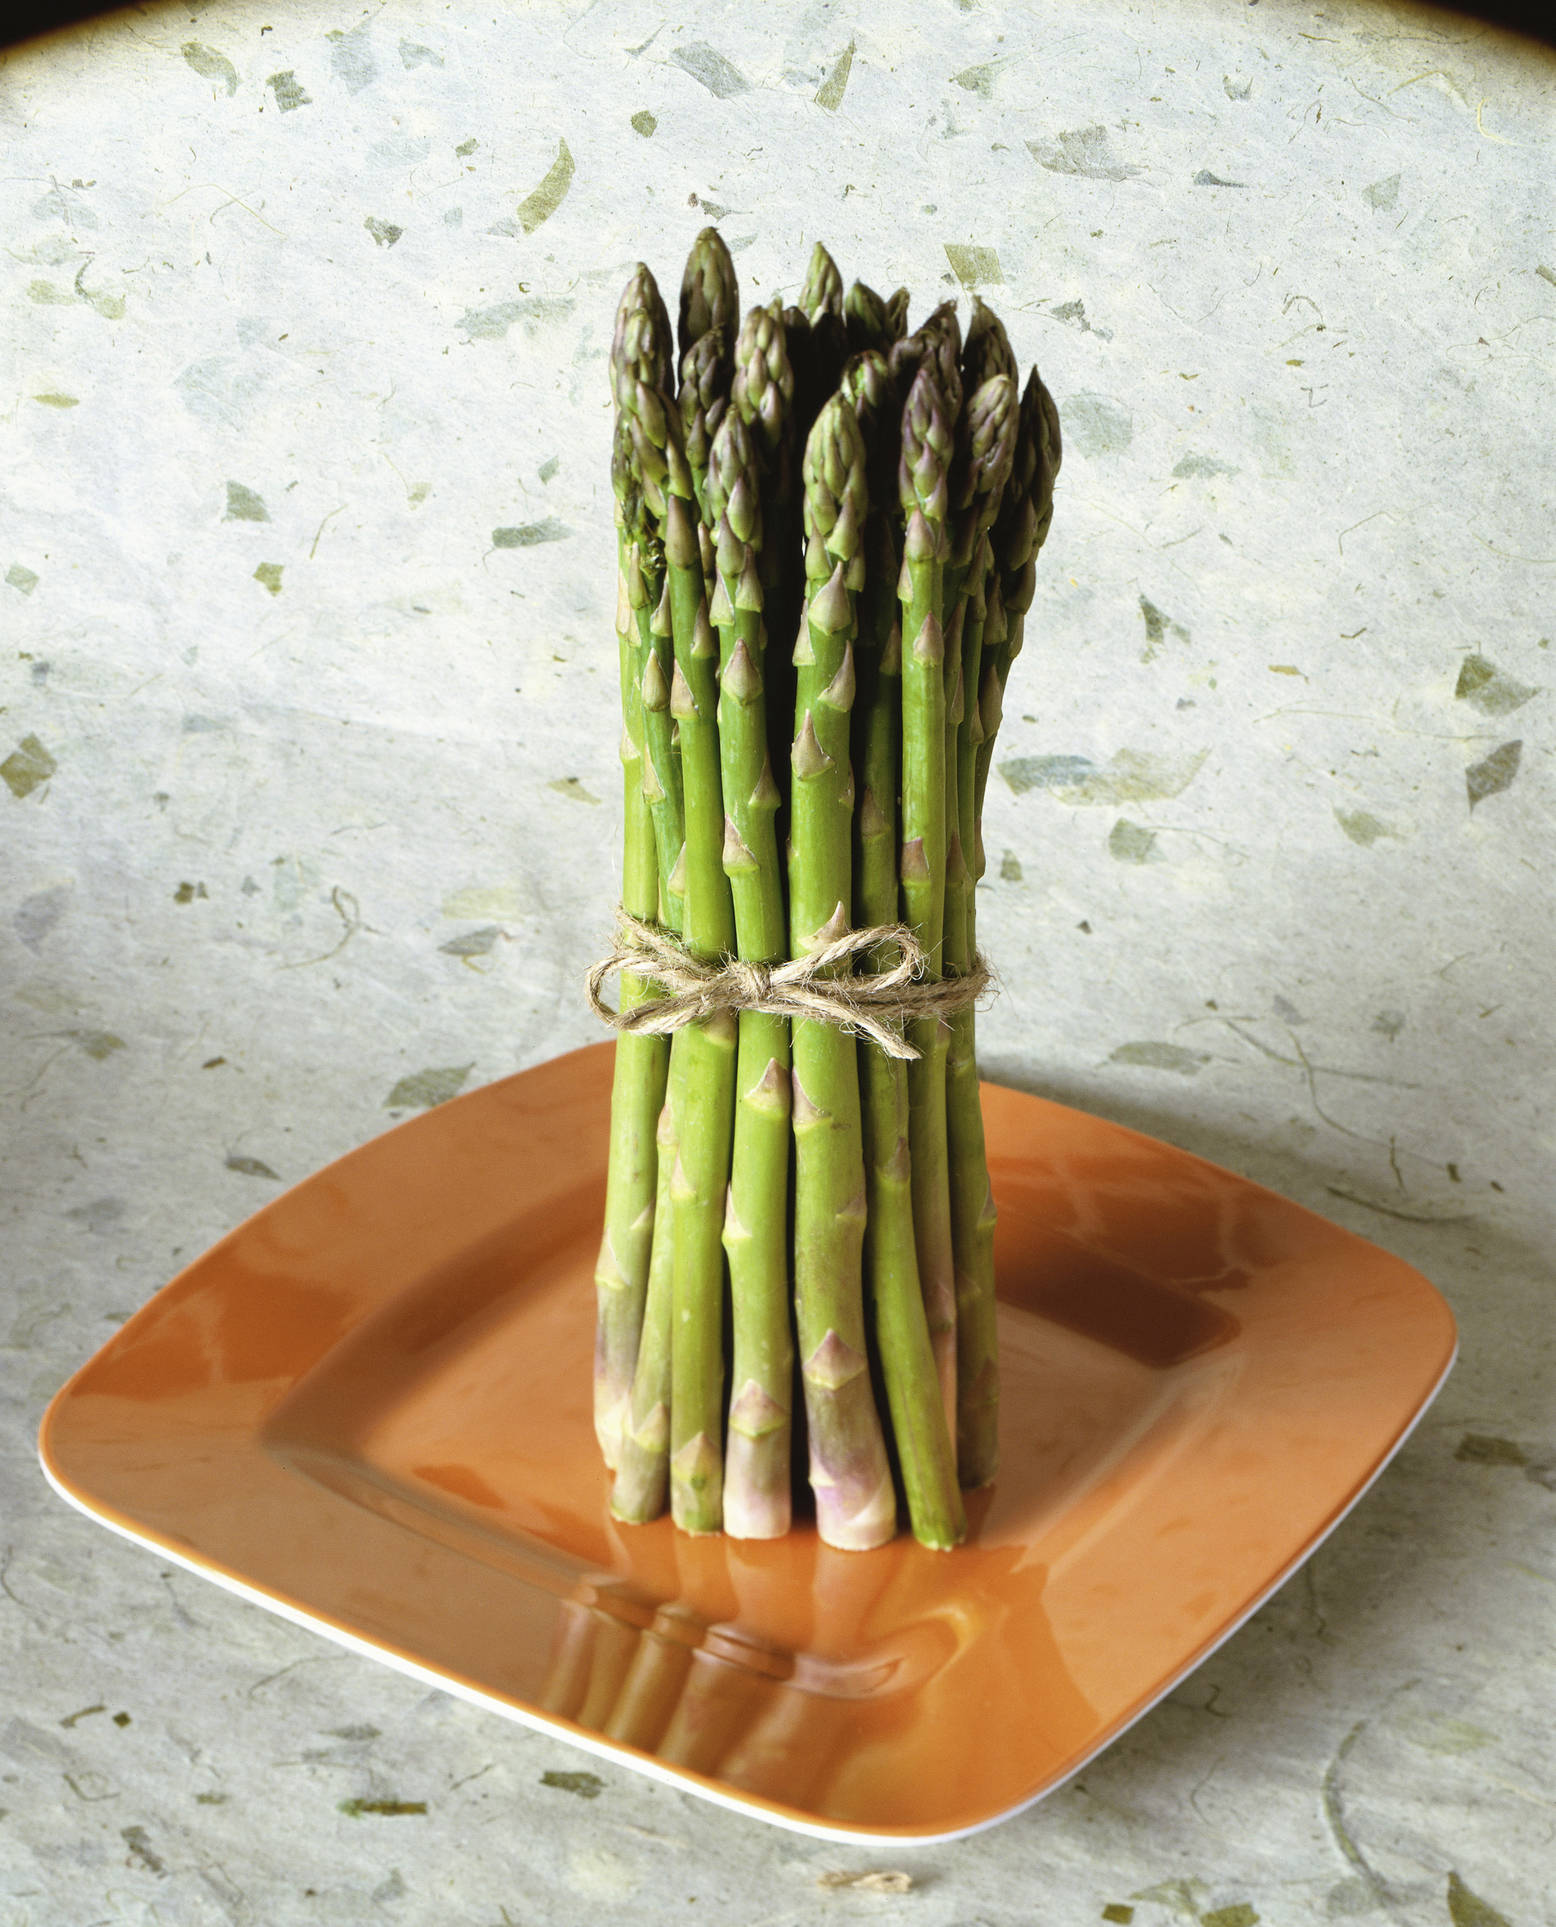 Let’s Eat Asparagus!